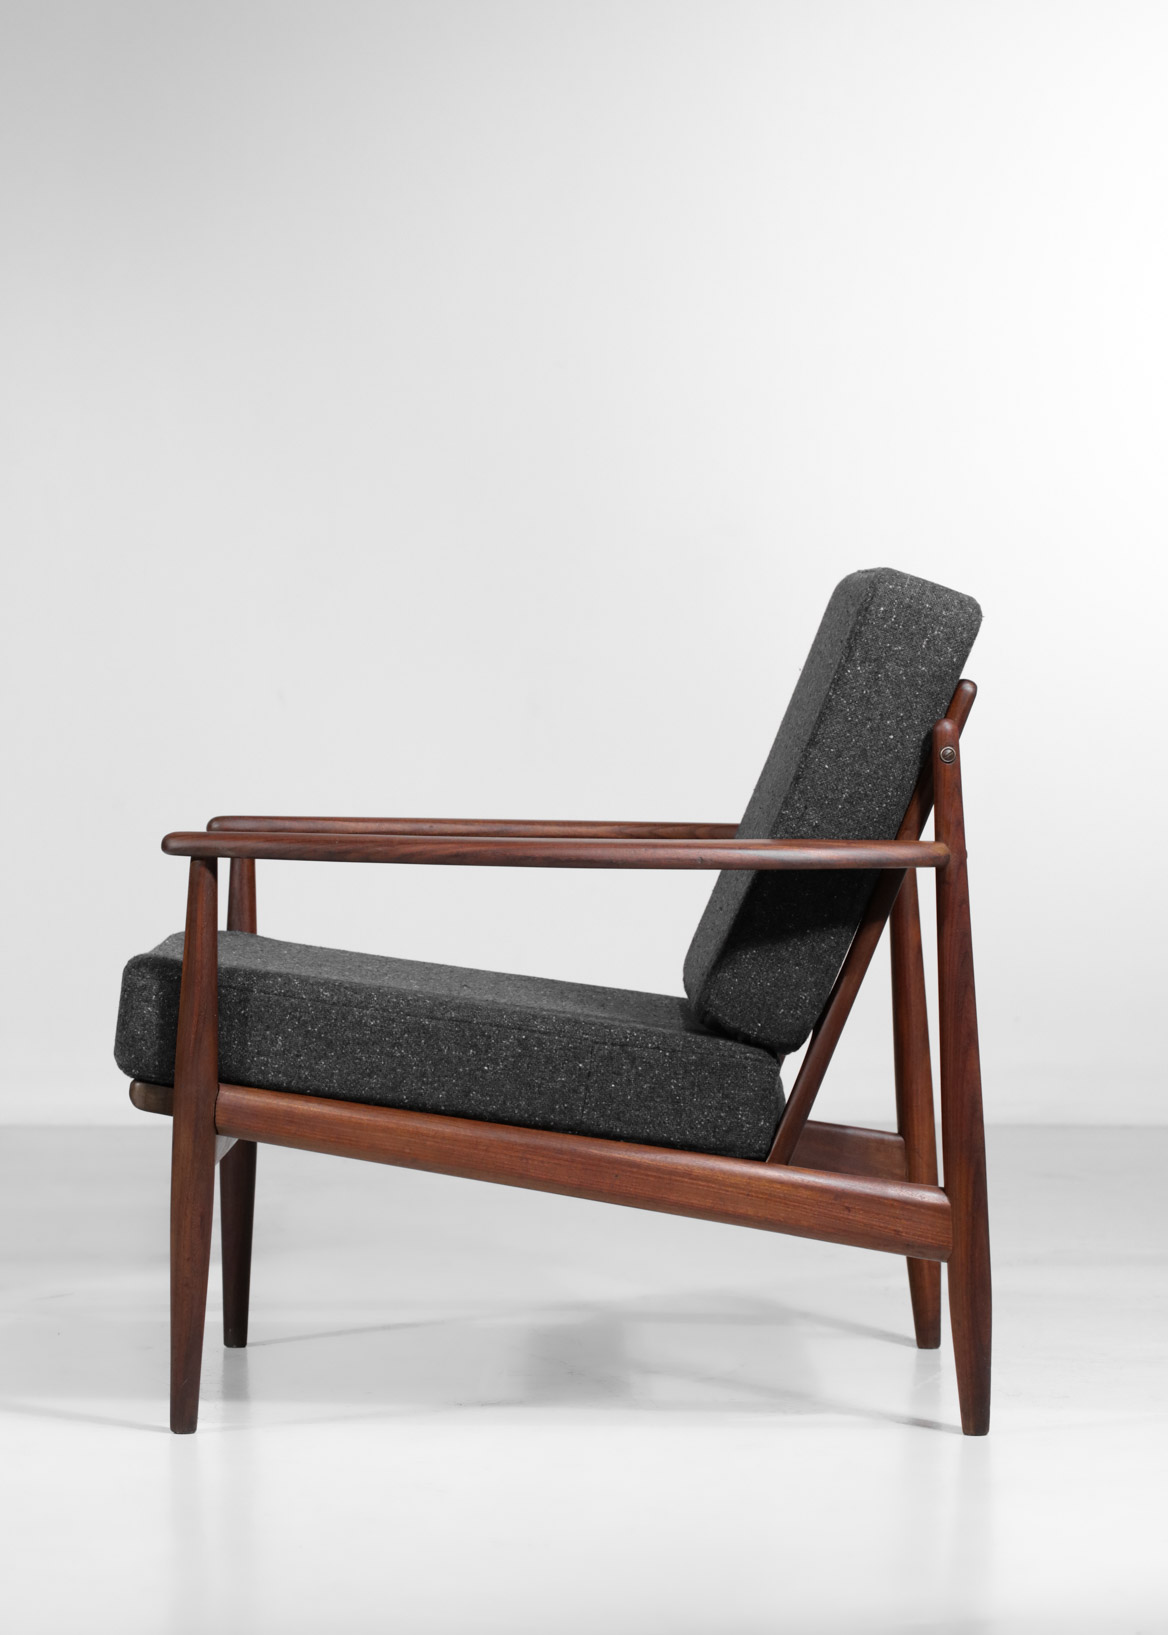 Vertrek heel veel Recreatie pair of armchairs style grete jalk danish scandinavian teak – Danke Galerie